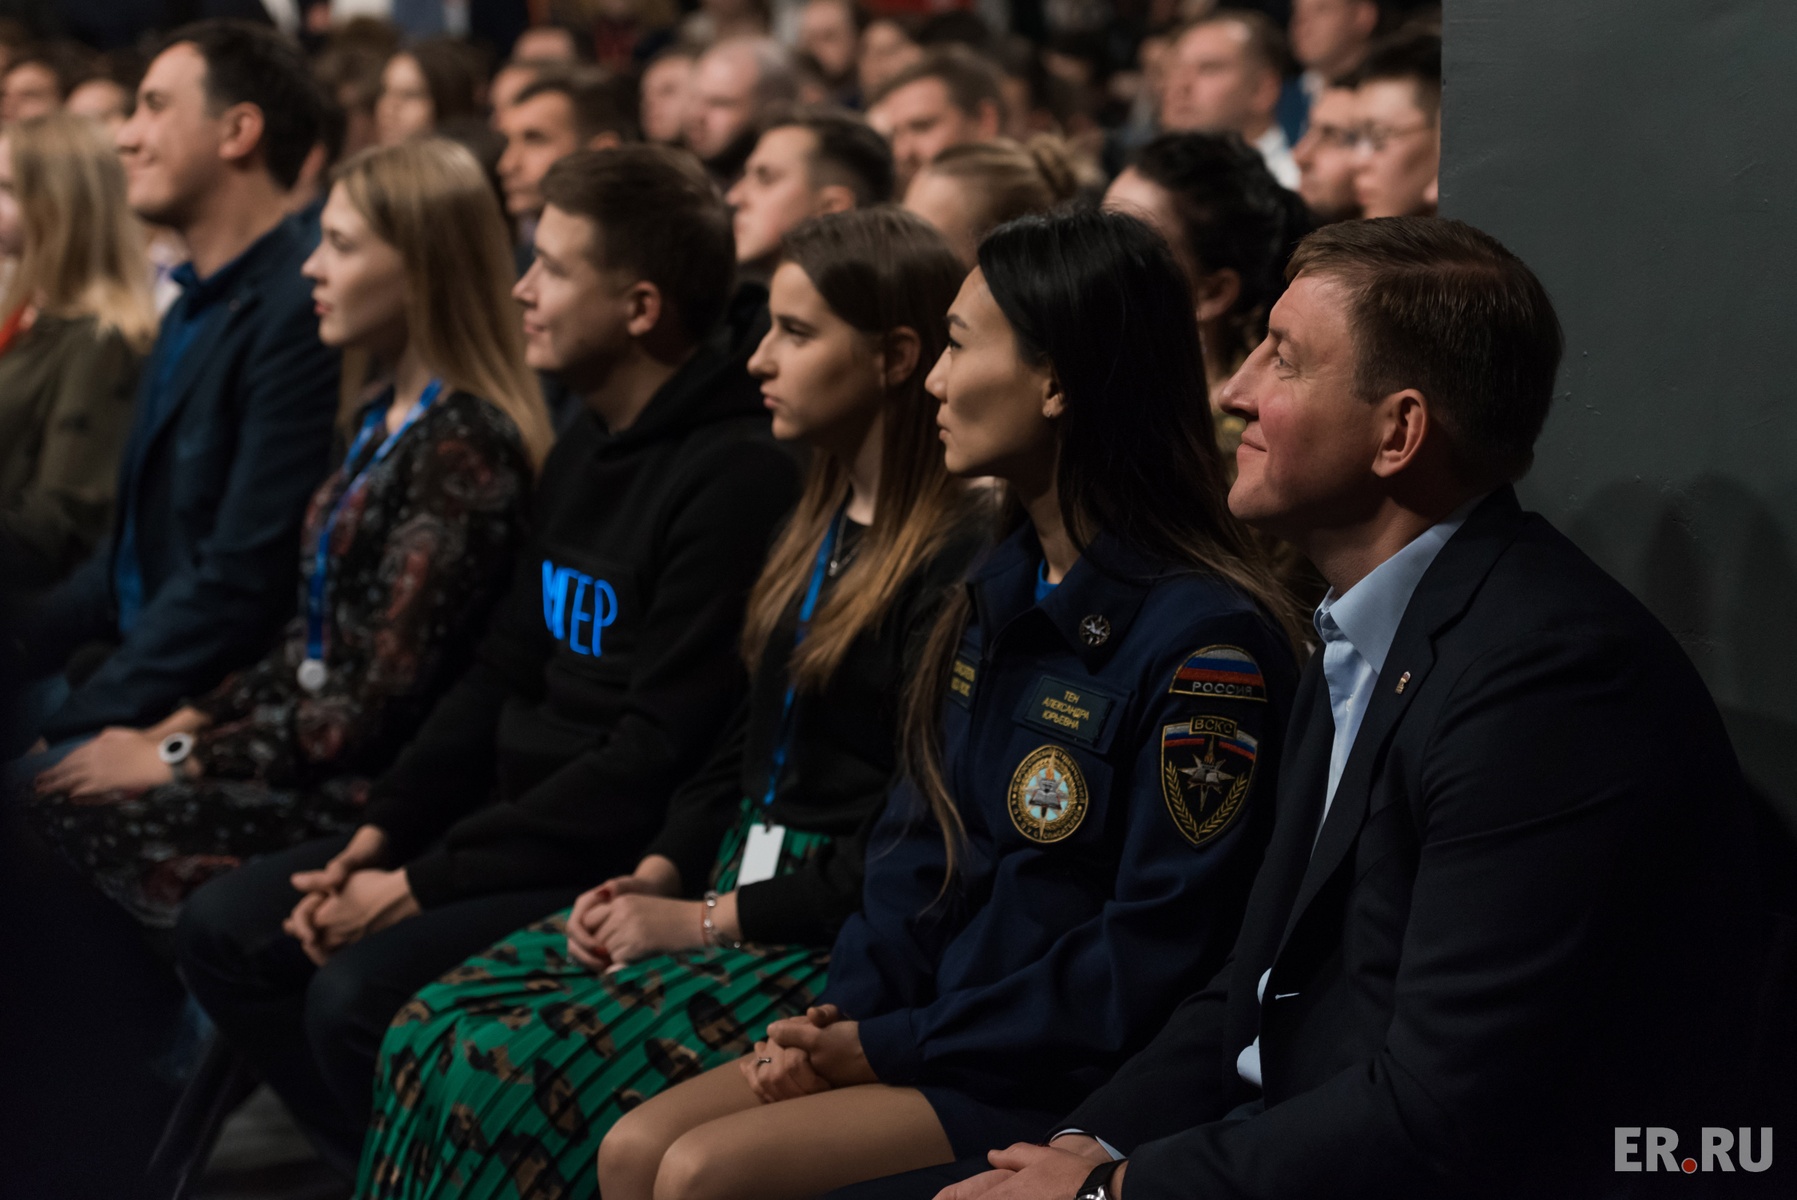  Дмитрий Медведев встретился с активистами «Молодой Гвардии Единой России»